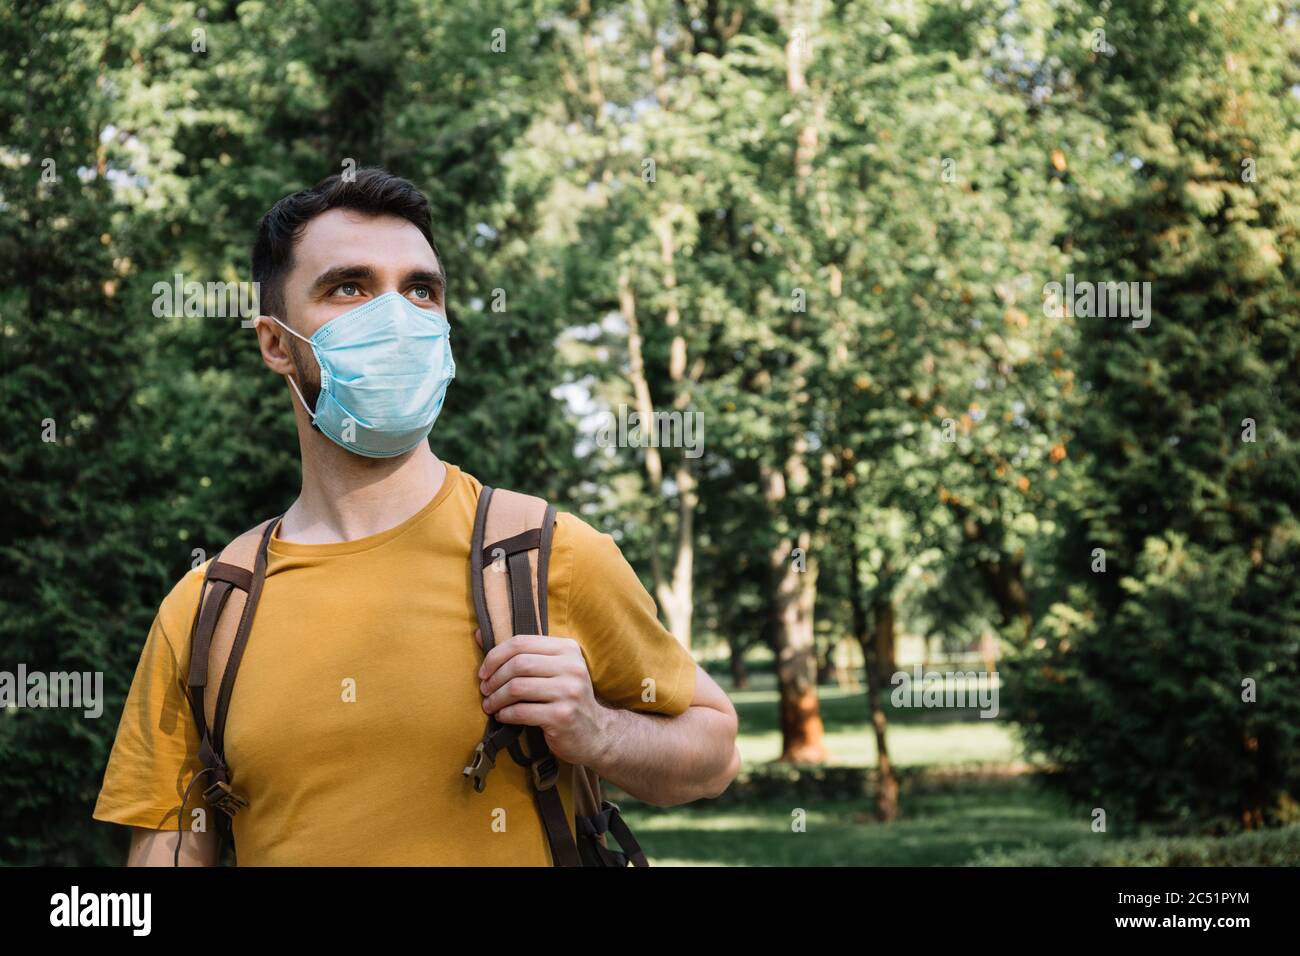 Mann trägt medizinische Maske, um vor Coronavirus-Infektion zu schützen. Quarantäne, Virus, sicher bleiben Konzept Stockfoto